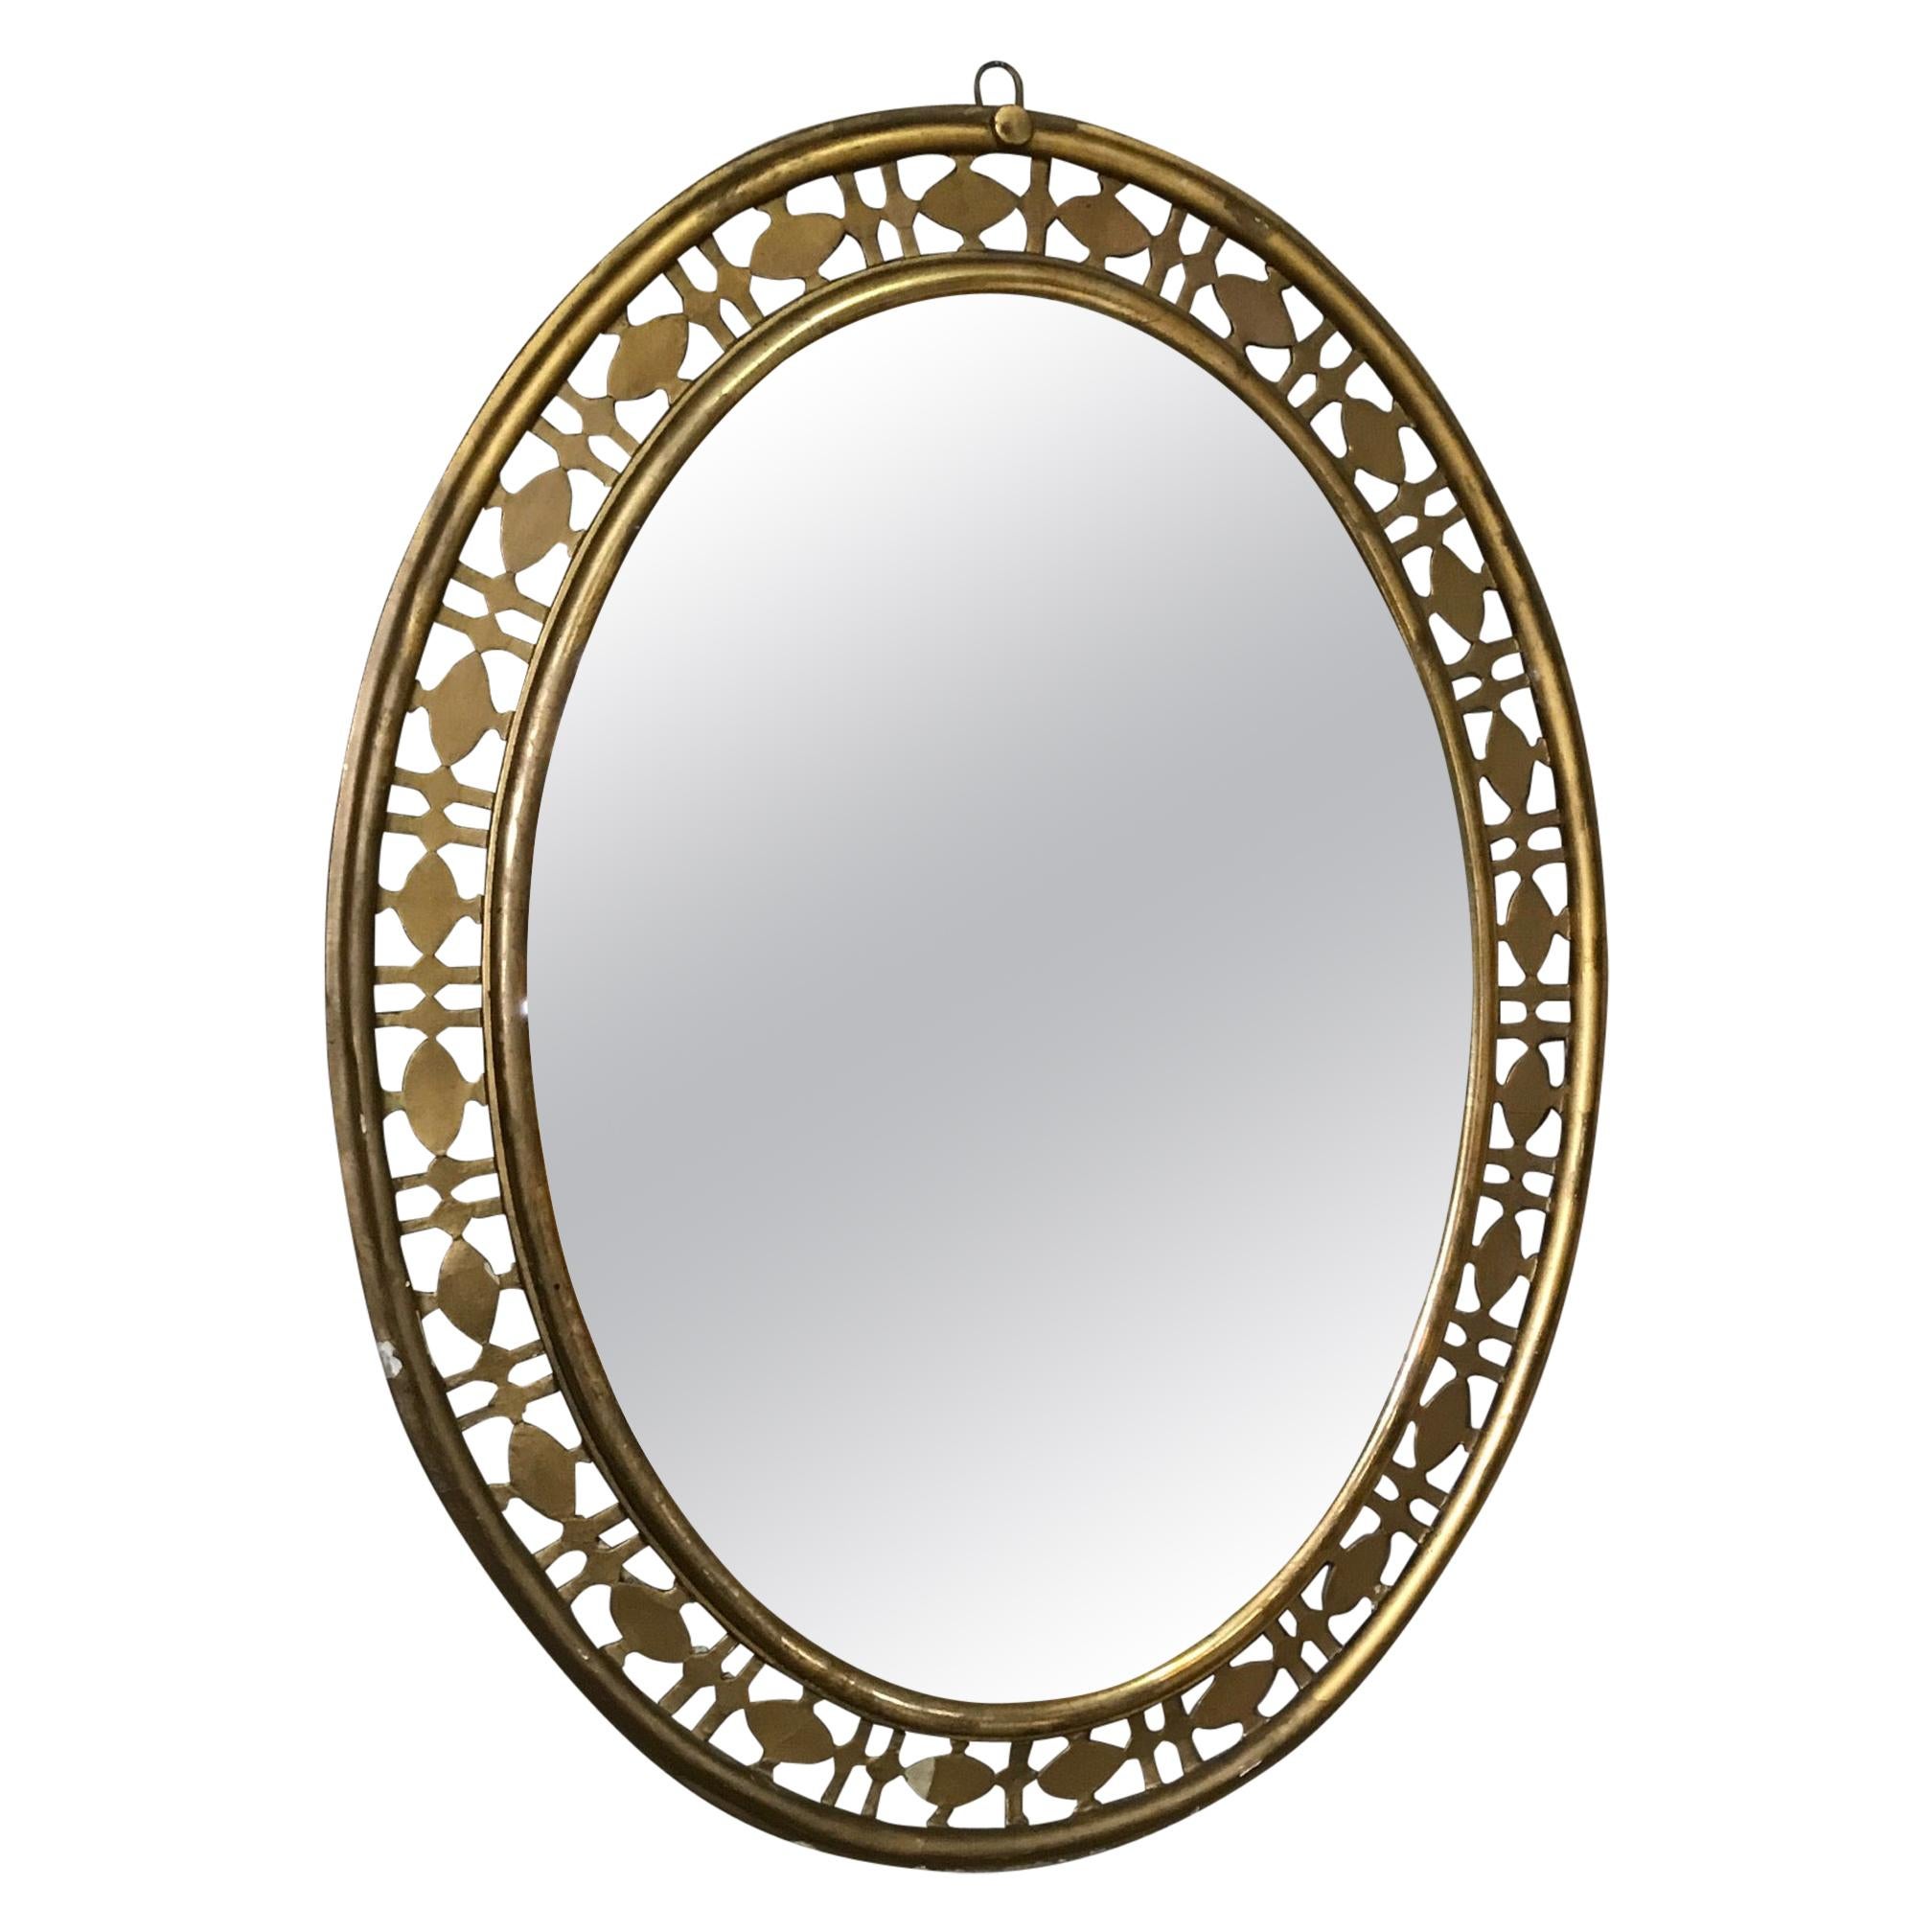 20th Century Italian Golden Wood Oval Mirror, 1940s